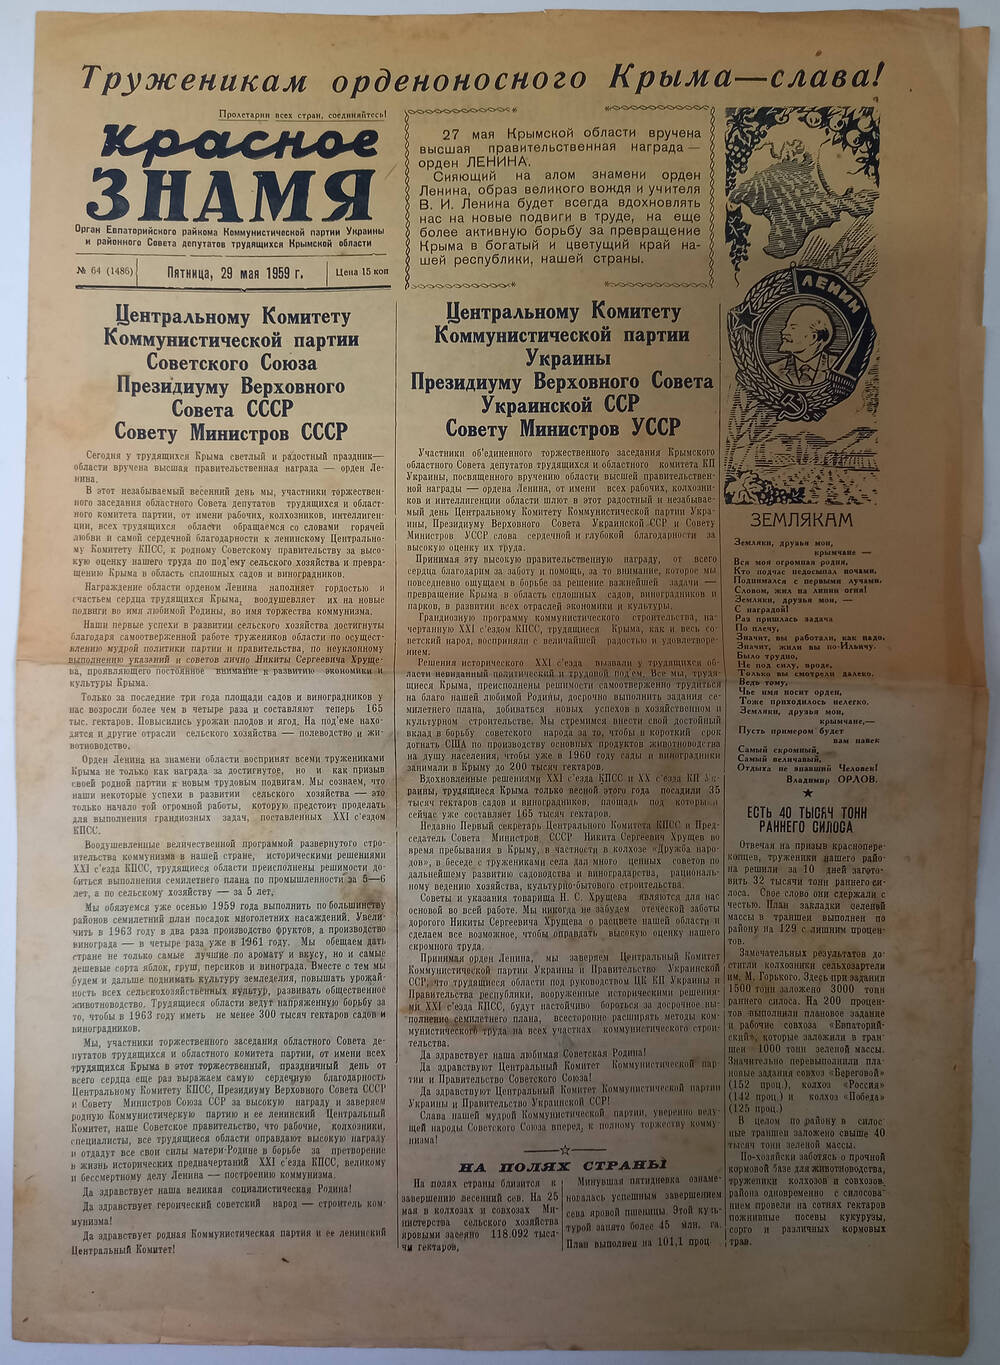 Газета Красное знамя №64(1486) от 29.05.1959 г.